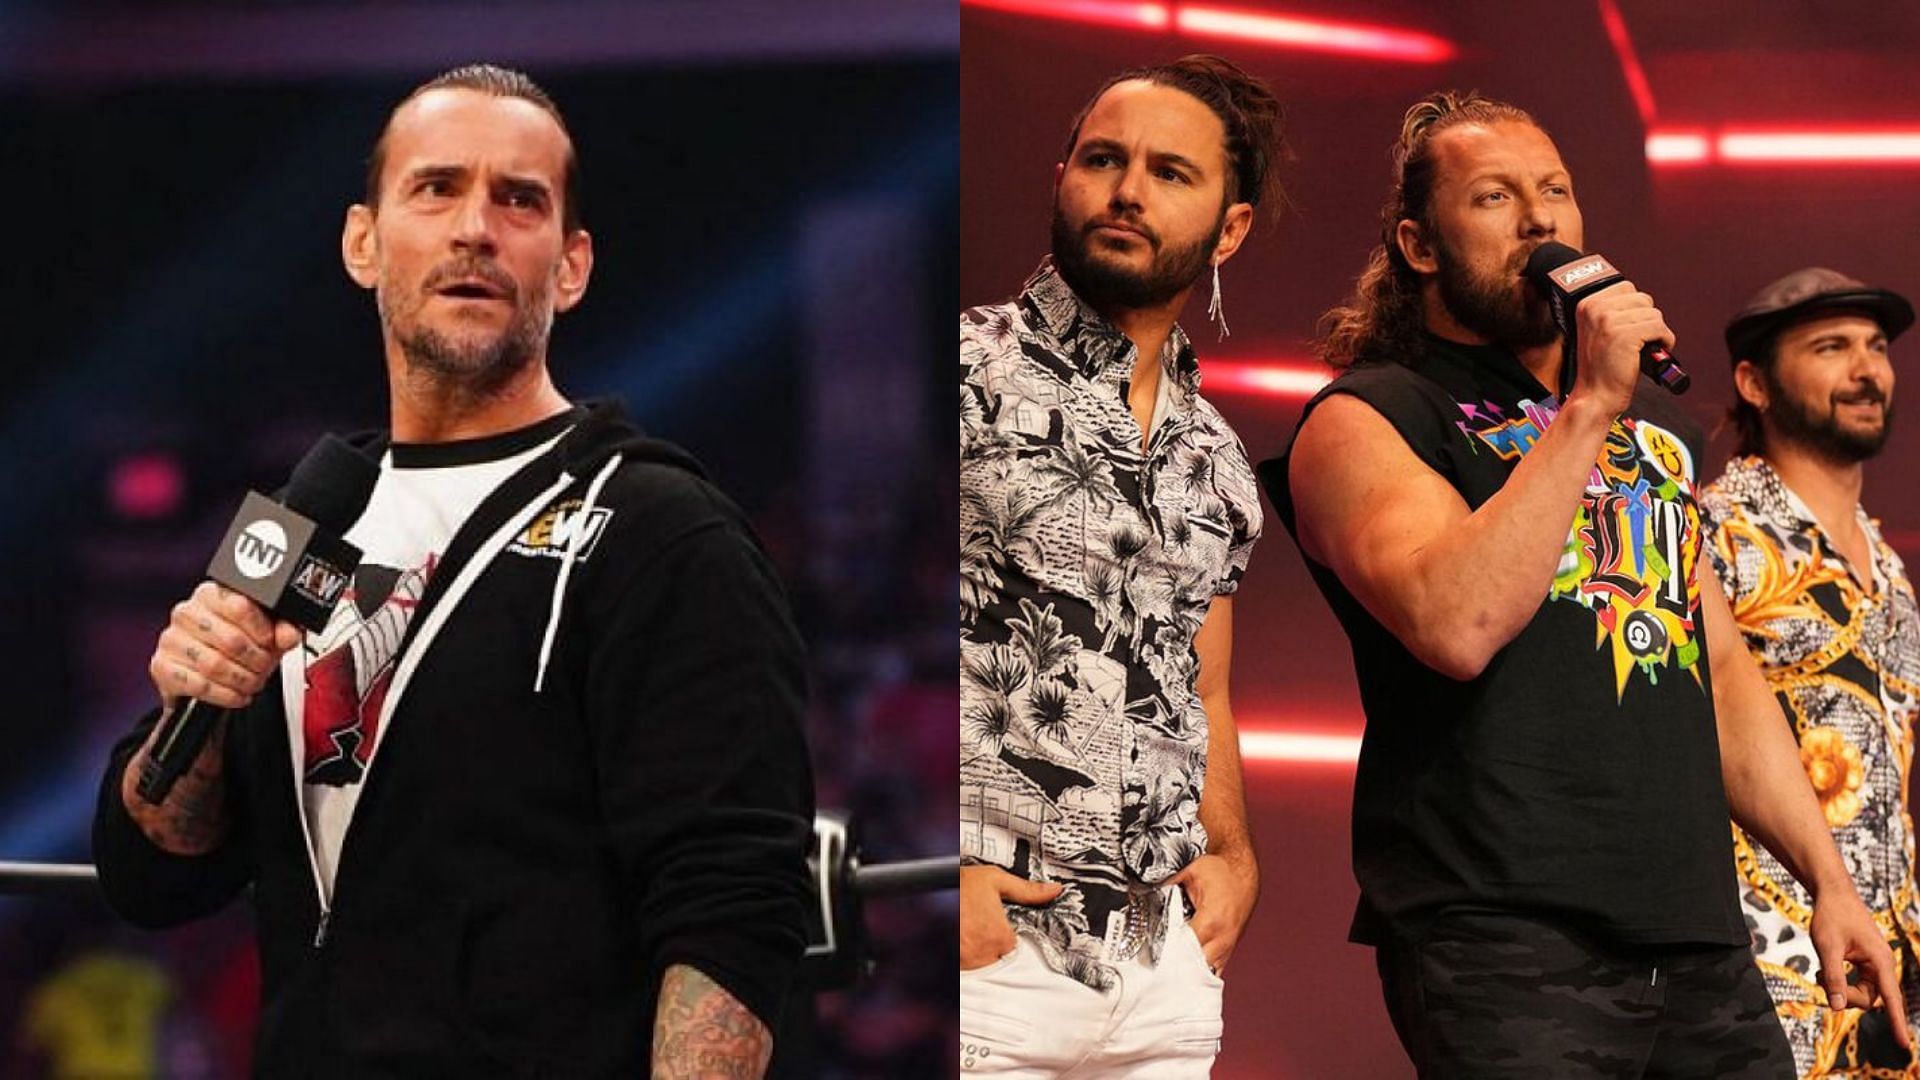 CM Punk (left), The Elite (right)